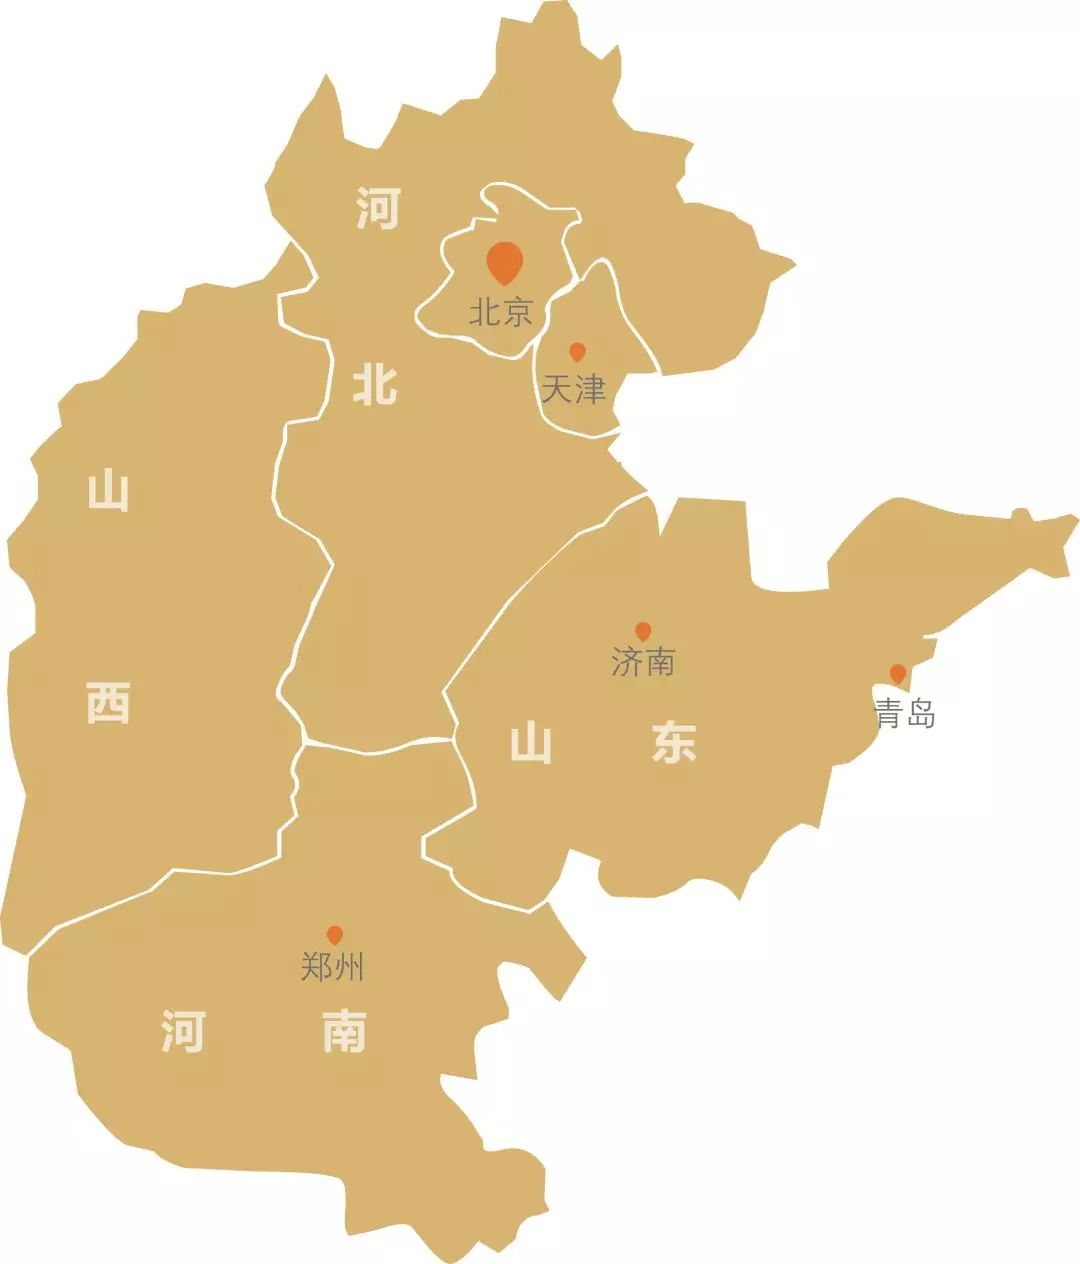 华北地区简图图片